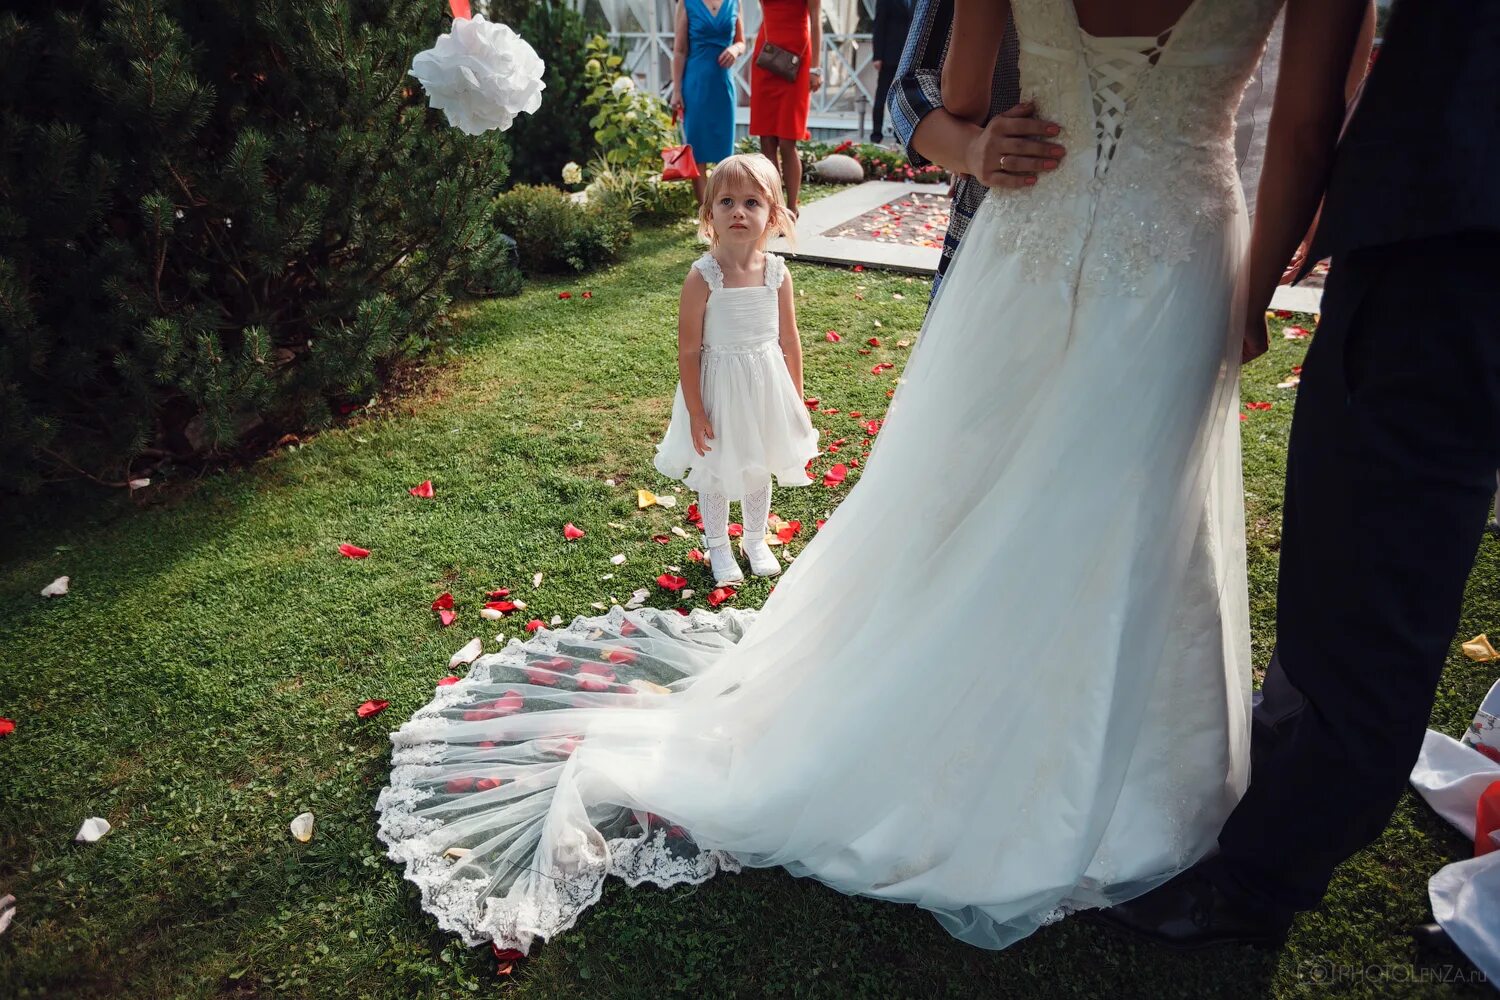 Видное свадьба. Фото в Видном на свадьбу. Можно ли жениху видеть венчальное платье. Мужем видели на свадьбе